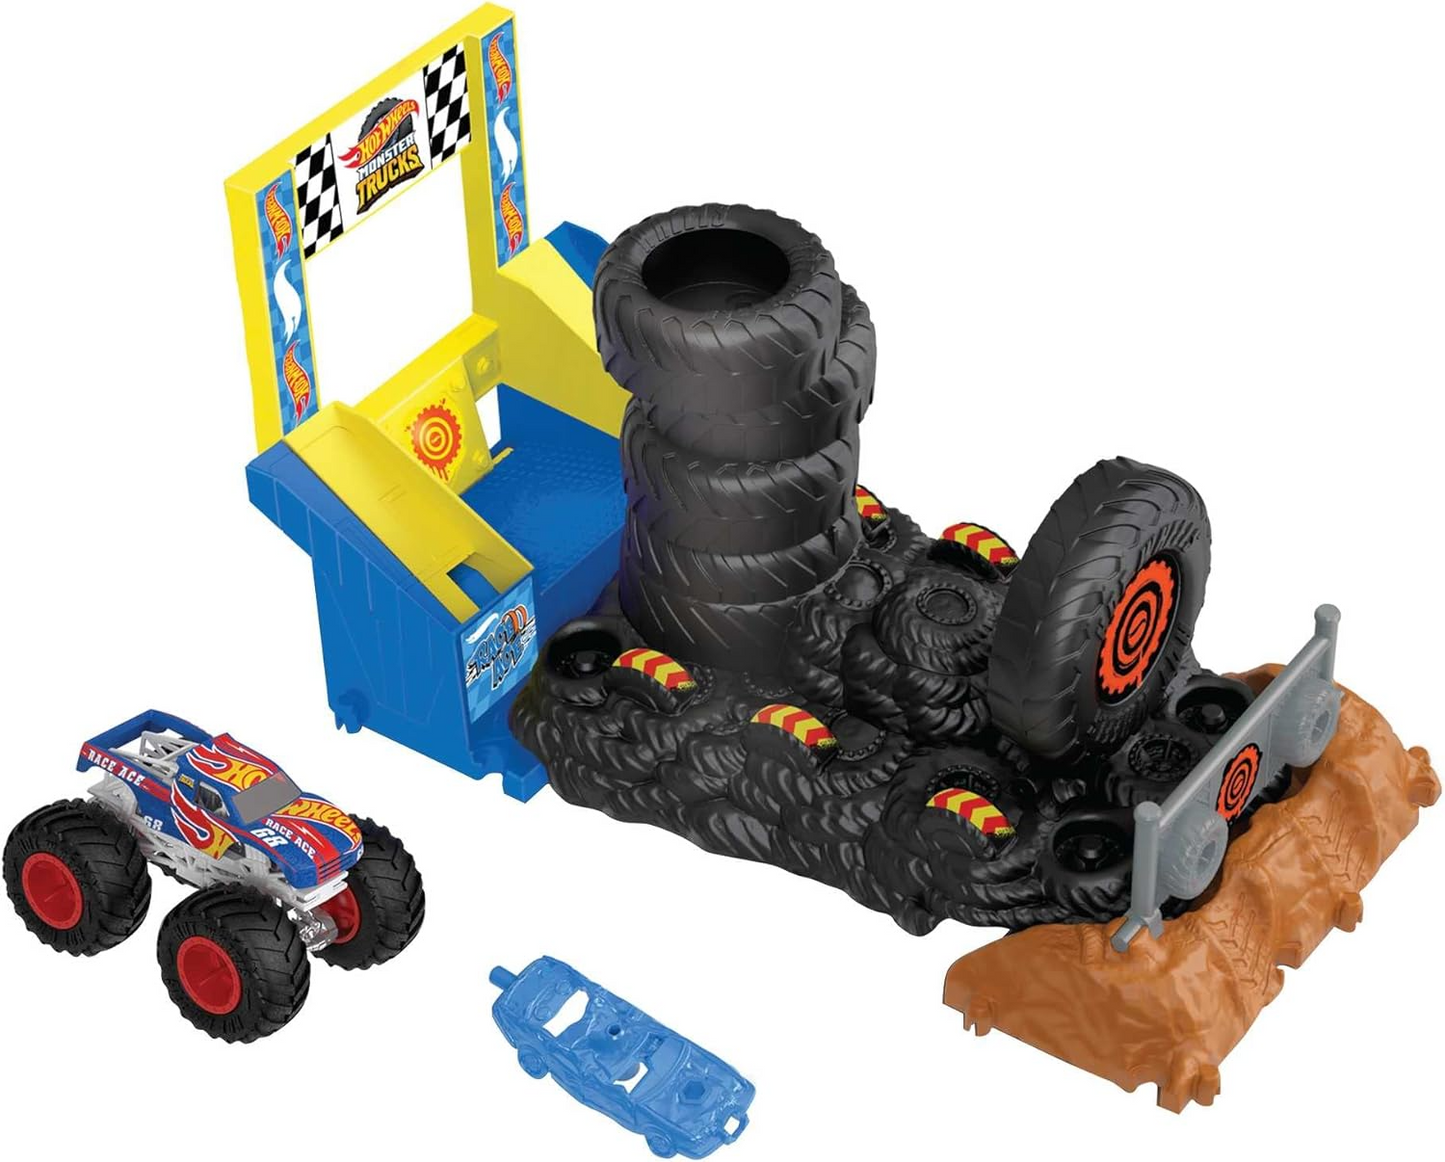 Hot Wheels Monster Trucks Arena Smashers Race Ace Smash Race Challenge Playset com caminhão de brinquedo Race Ace em escala 1:64 e 1 carro esmagável, HNB89